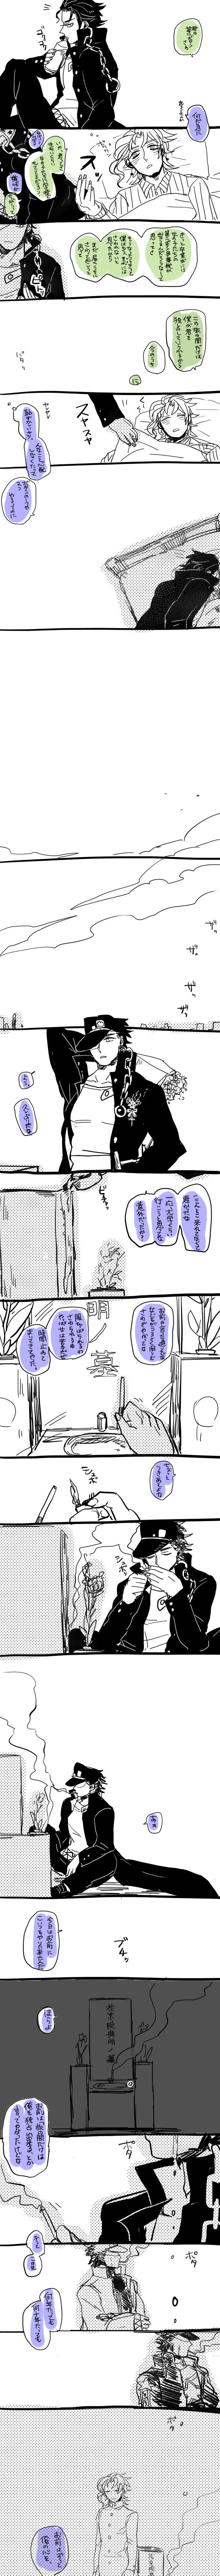 【承花】有一直被束缚的愿望的承太郎和第二颗扣子的故事